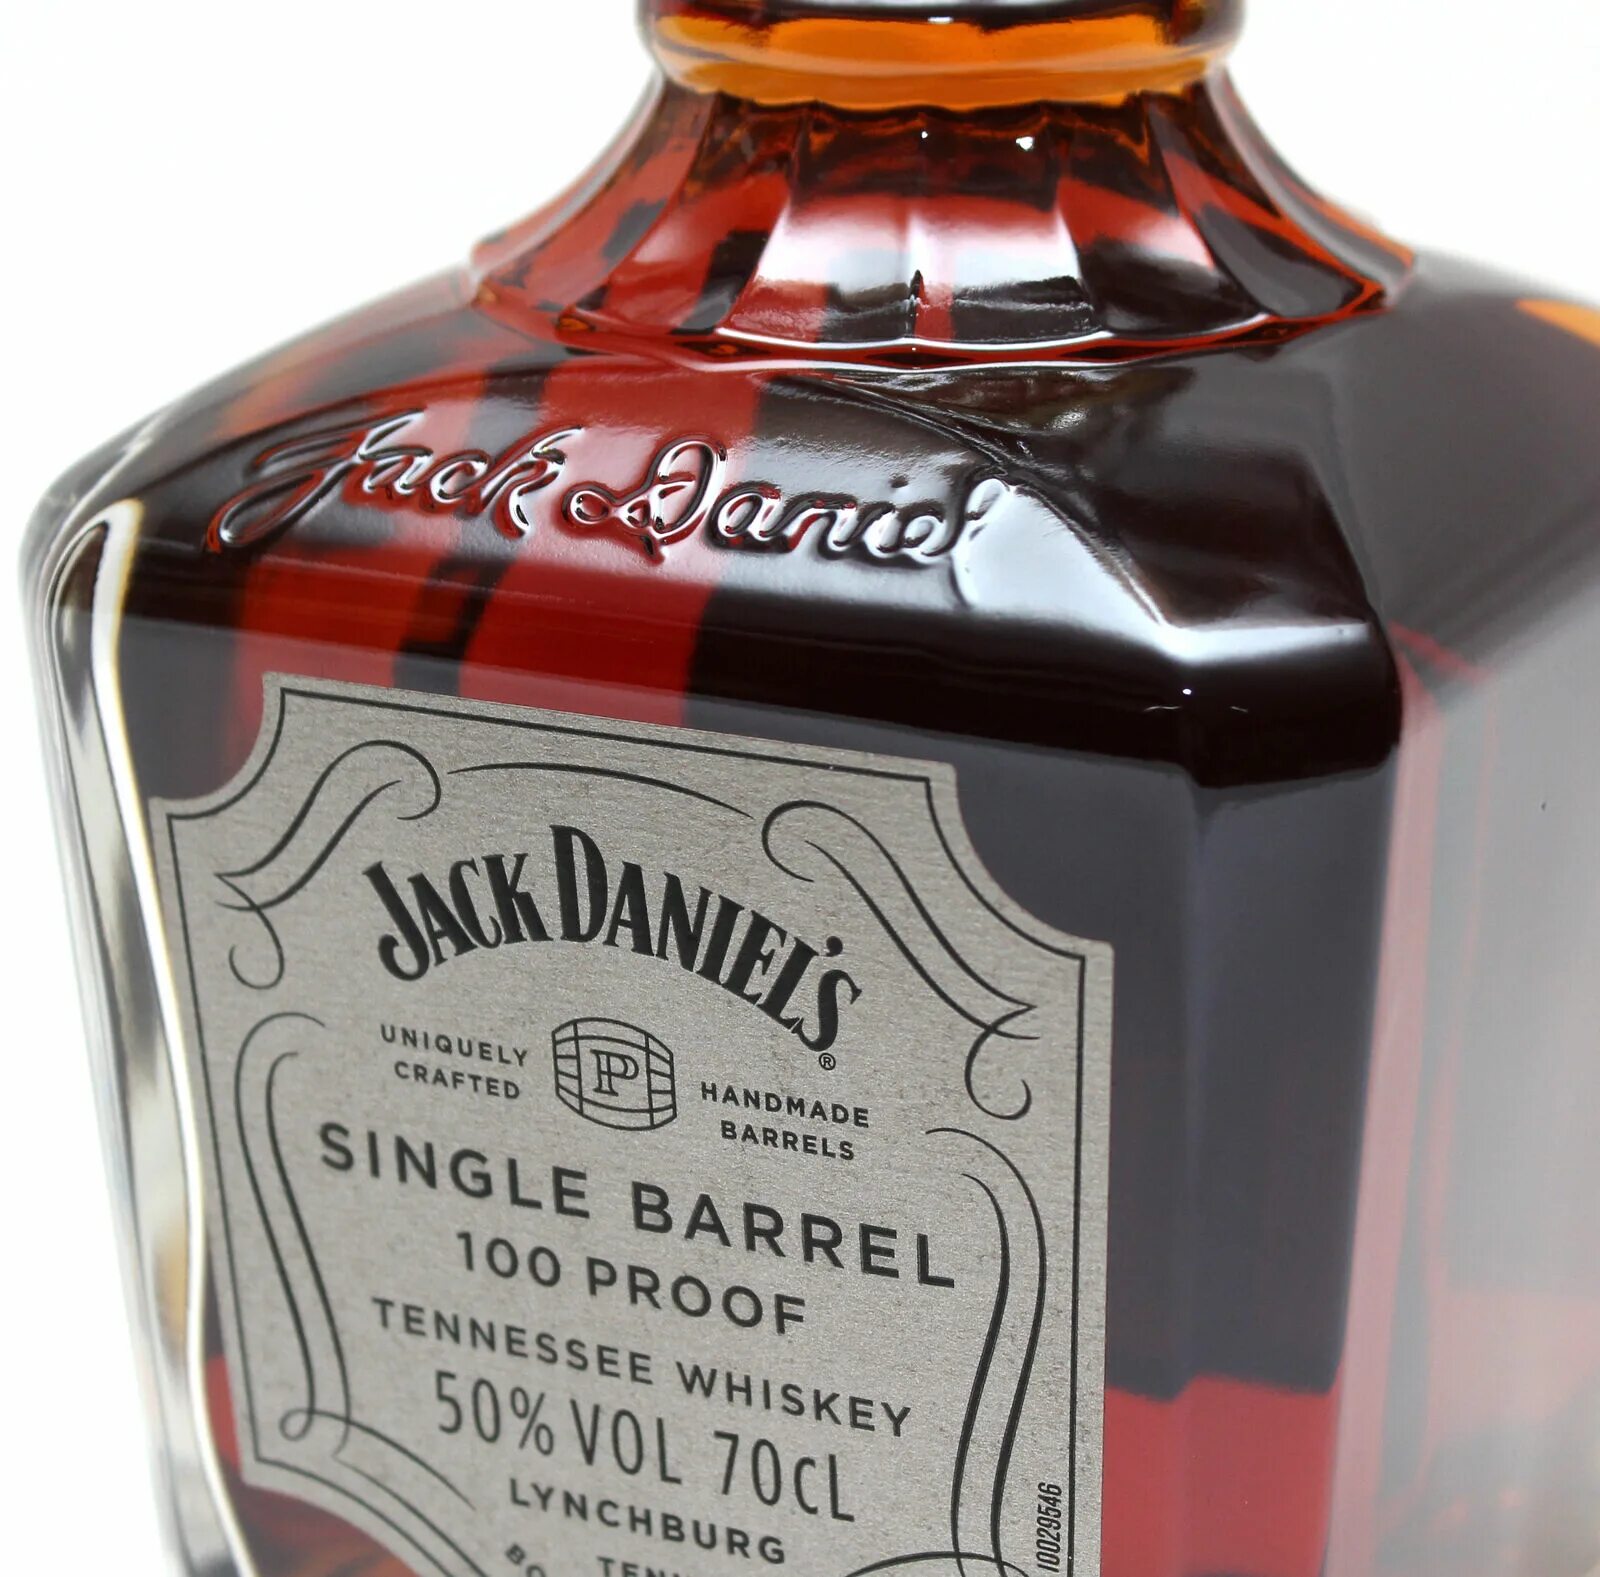 Джек Дэниэлс сингл Баррел 100 Proof. Джек Дэниэлс 0.7 Single Barrel. Jack Daniels 100 Proof. Jack Daniels Single Barrel 100 Proof 50%.